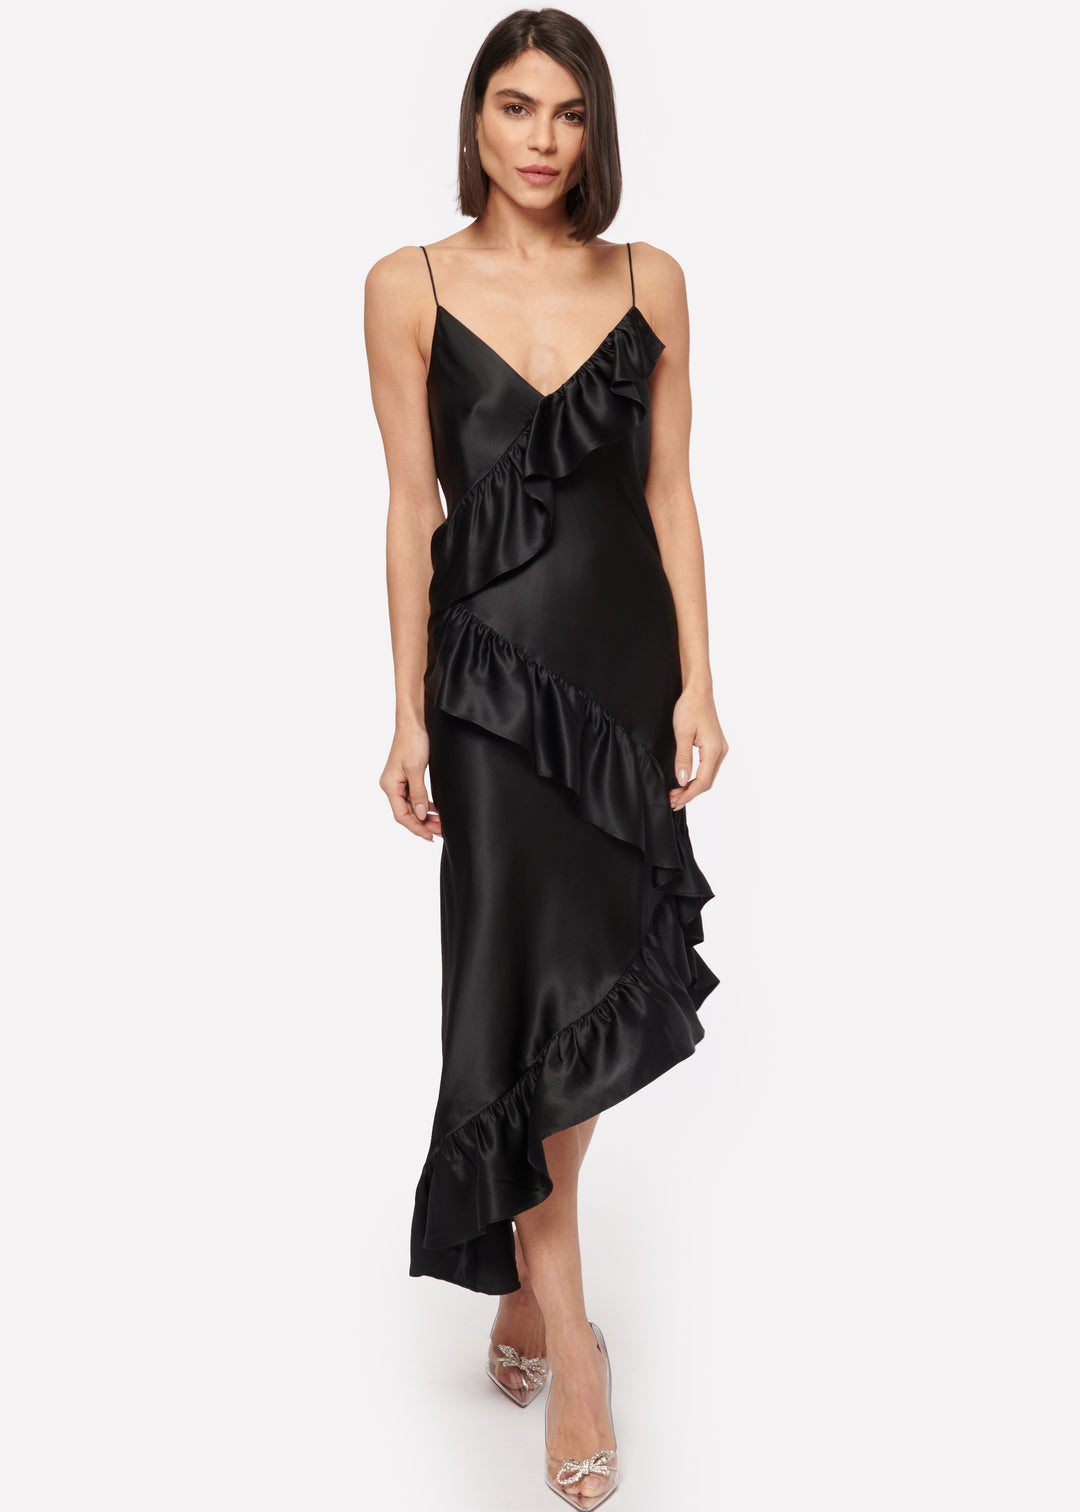 Cami NYC - Dua Dress in Black